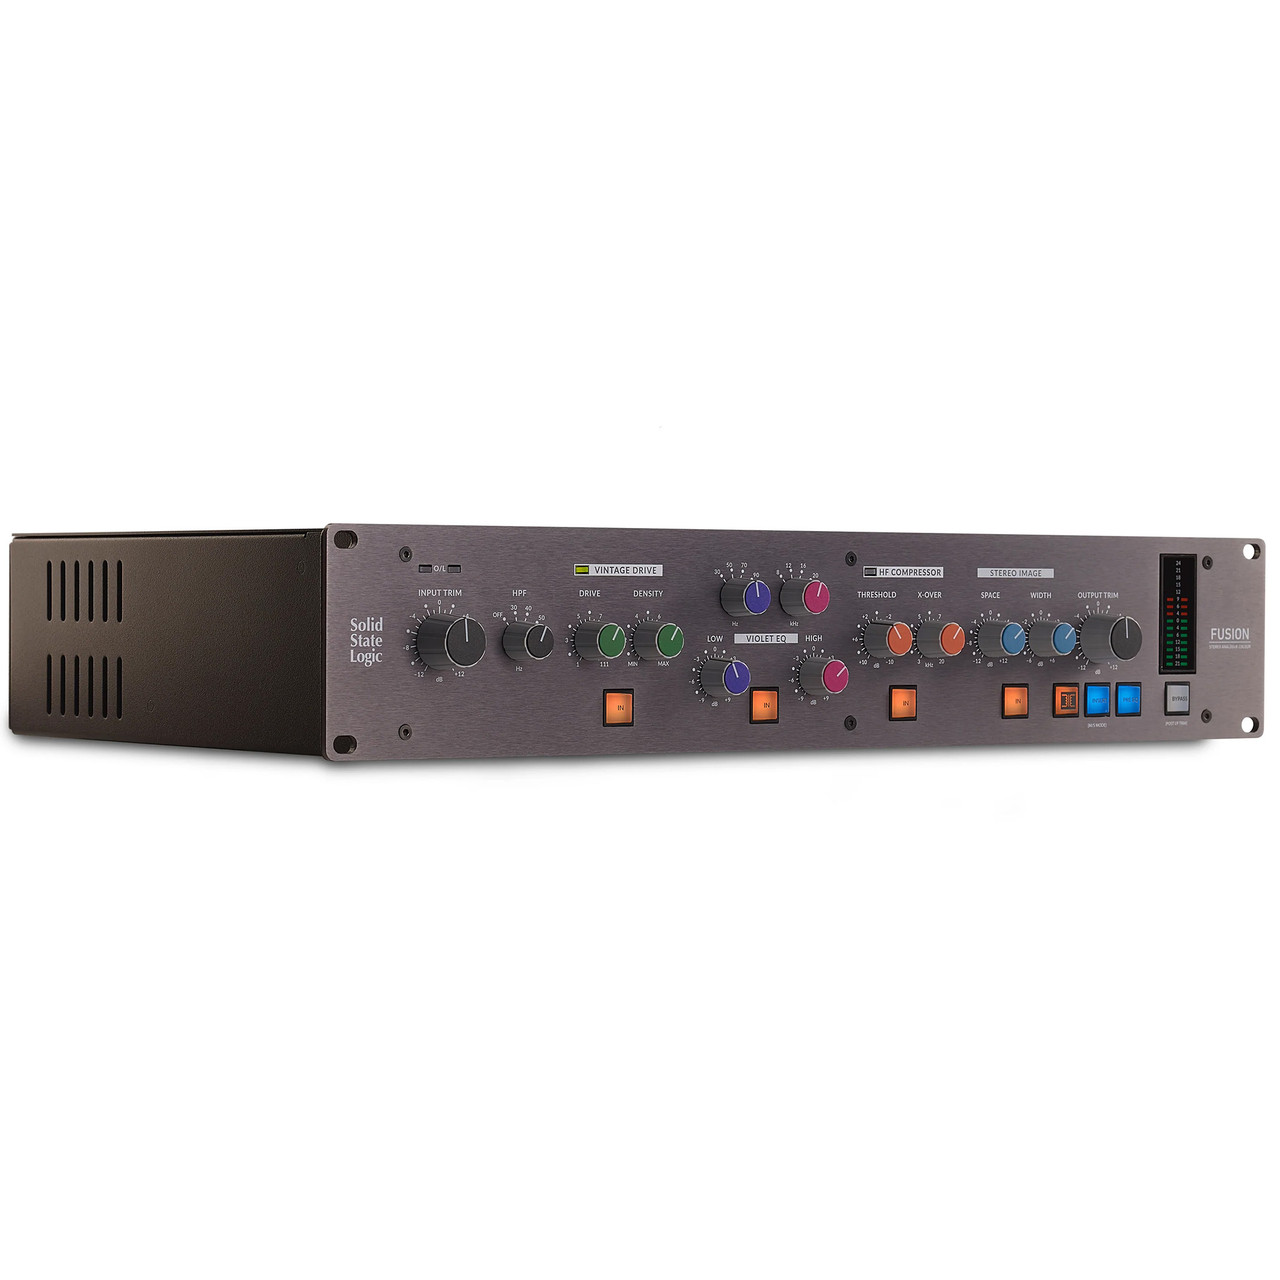 Solid State Logic Fusion Audio Processor | FrontEndAudio.com